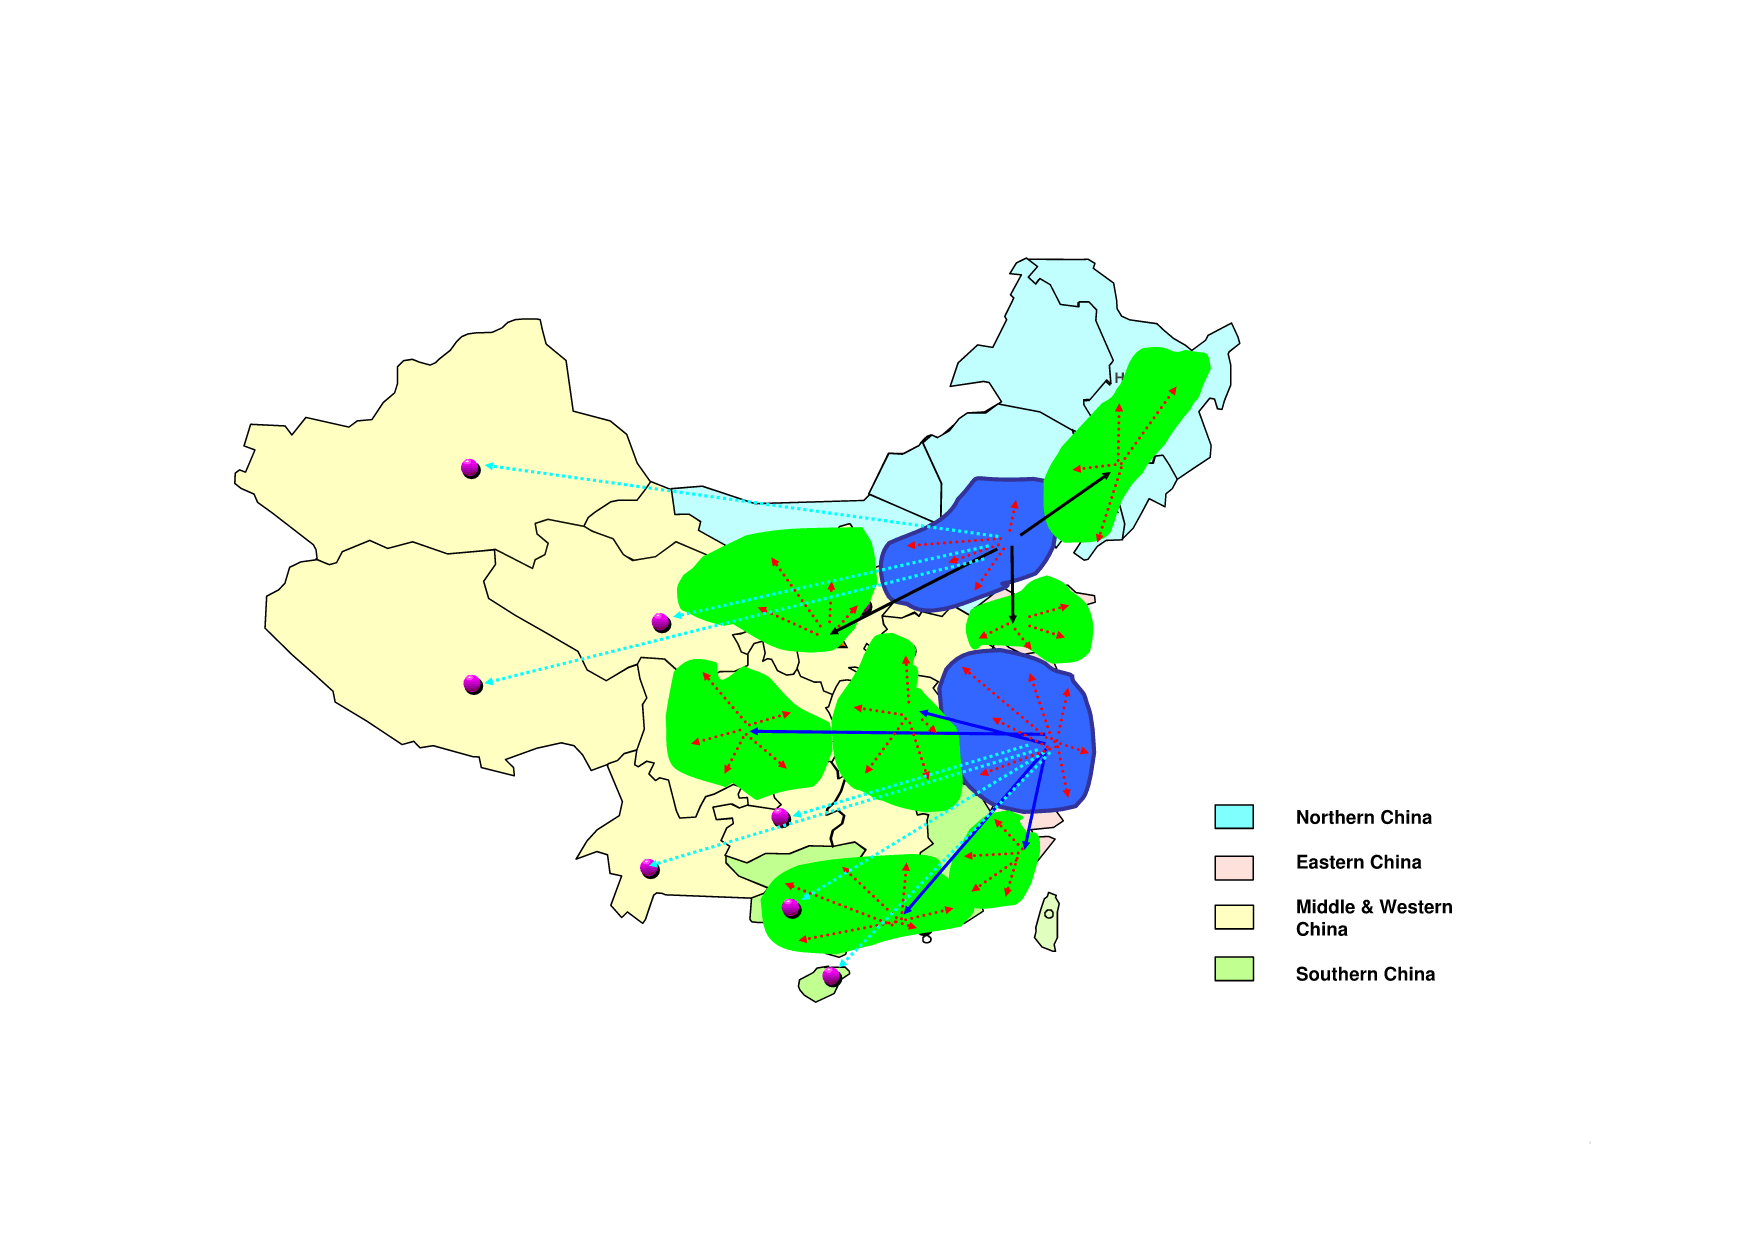 中国丶世界矢量地图素材(详细到省市丶可编辑)